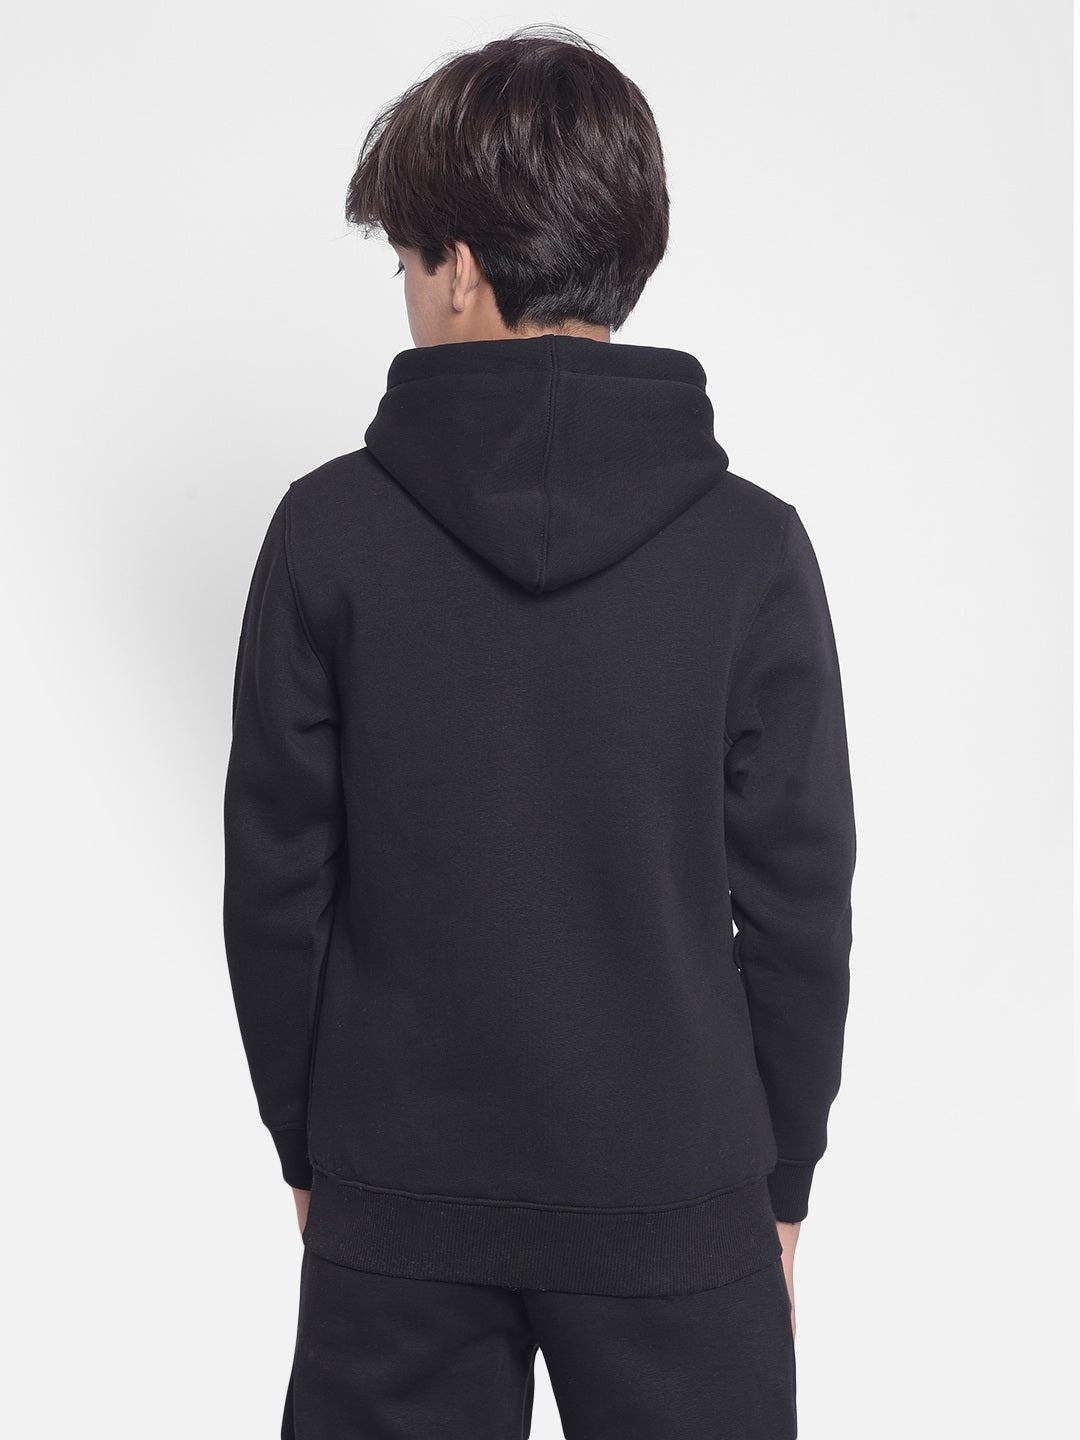 Black Printed Sweatshirt With Hood-Boys Sweatshirt-Crimsoune Club